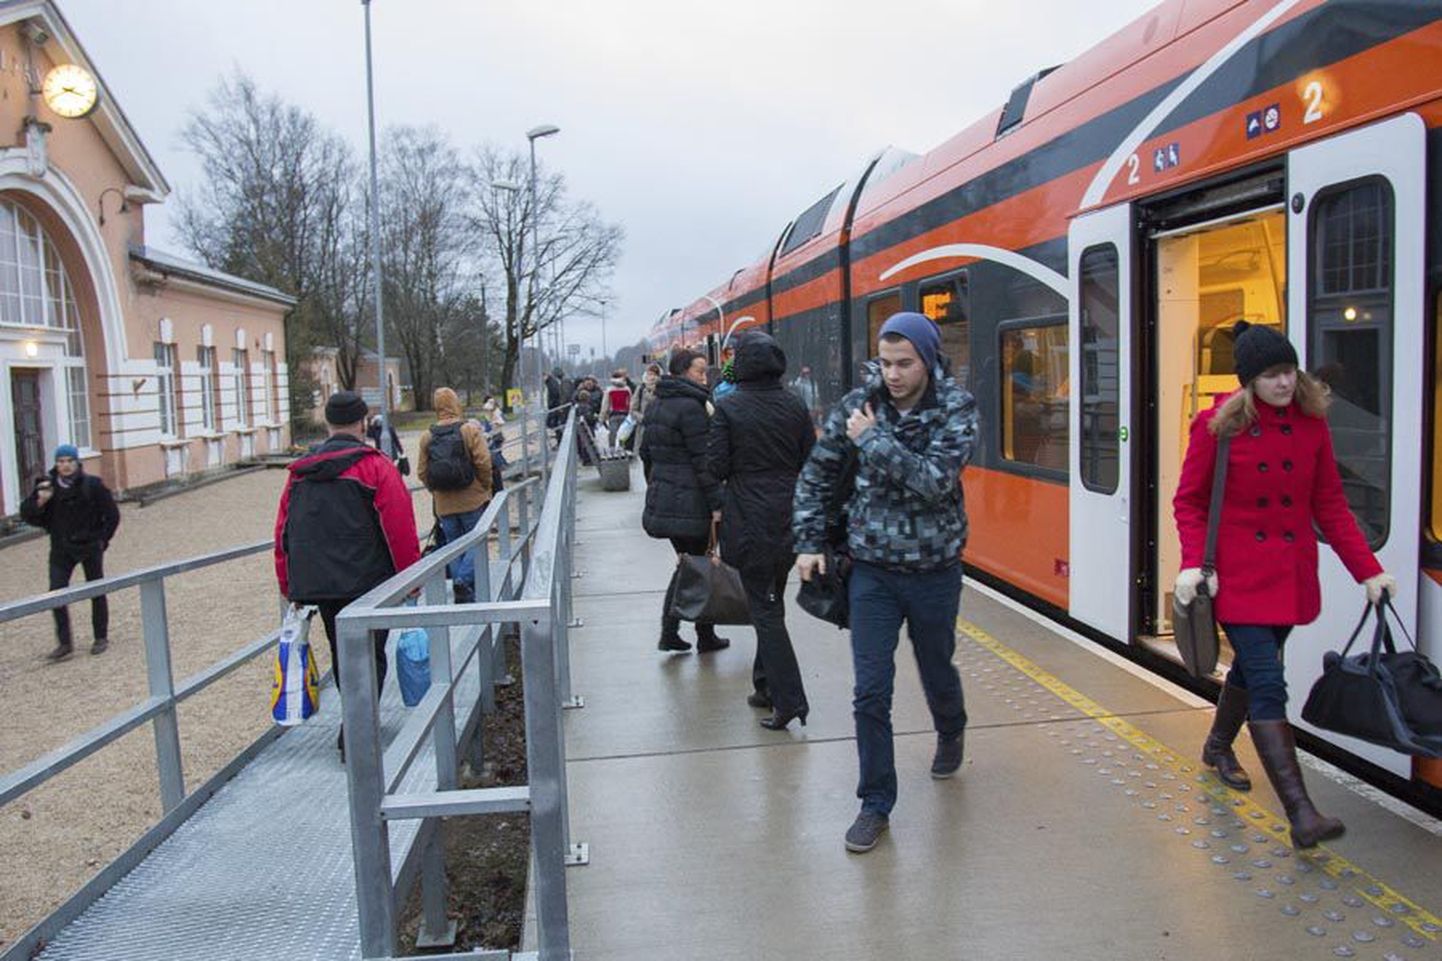 Neljapäeval kell 15.42 Viljandisse jõudnud Tallinna rongis oli umbes 50 inimest ning keegi istekohata jäämise pärast muretsema ei pidanud.